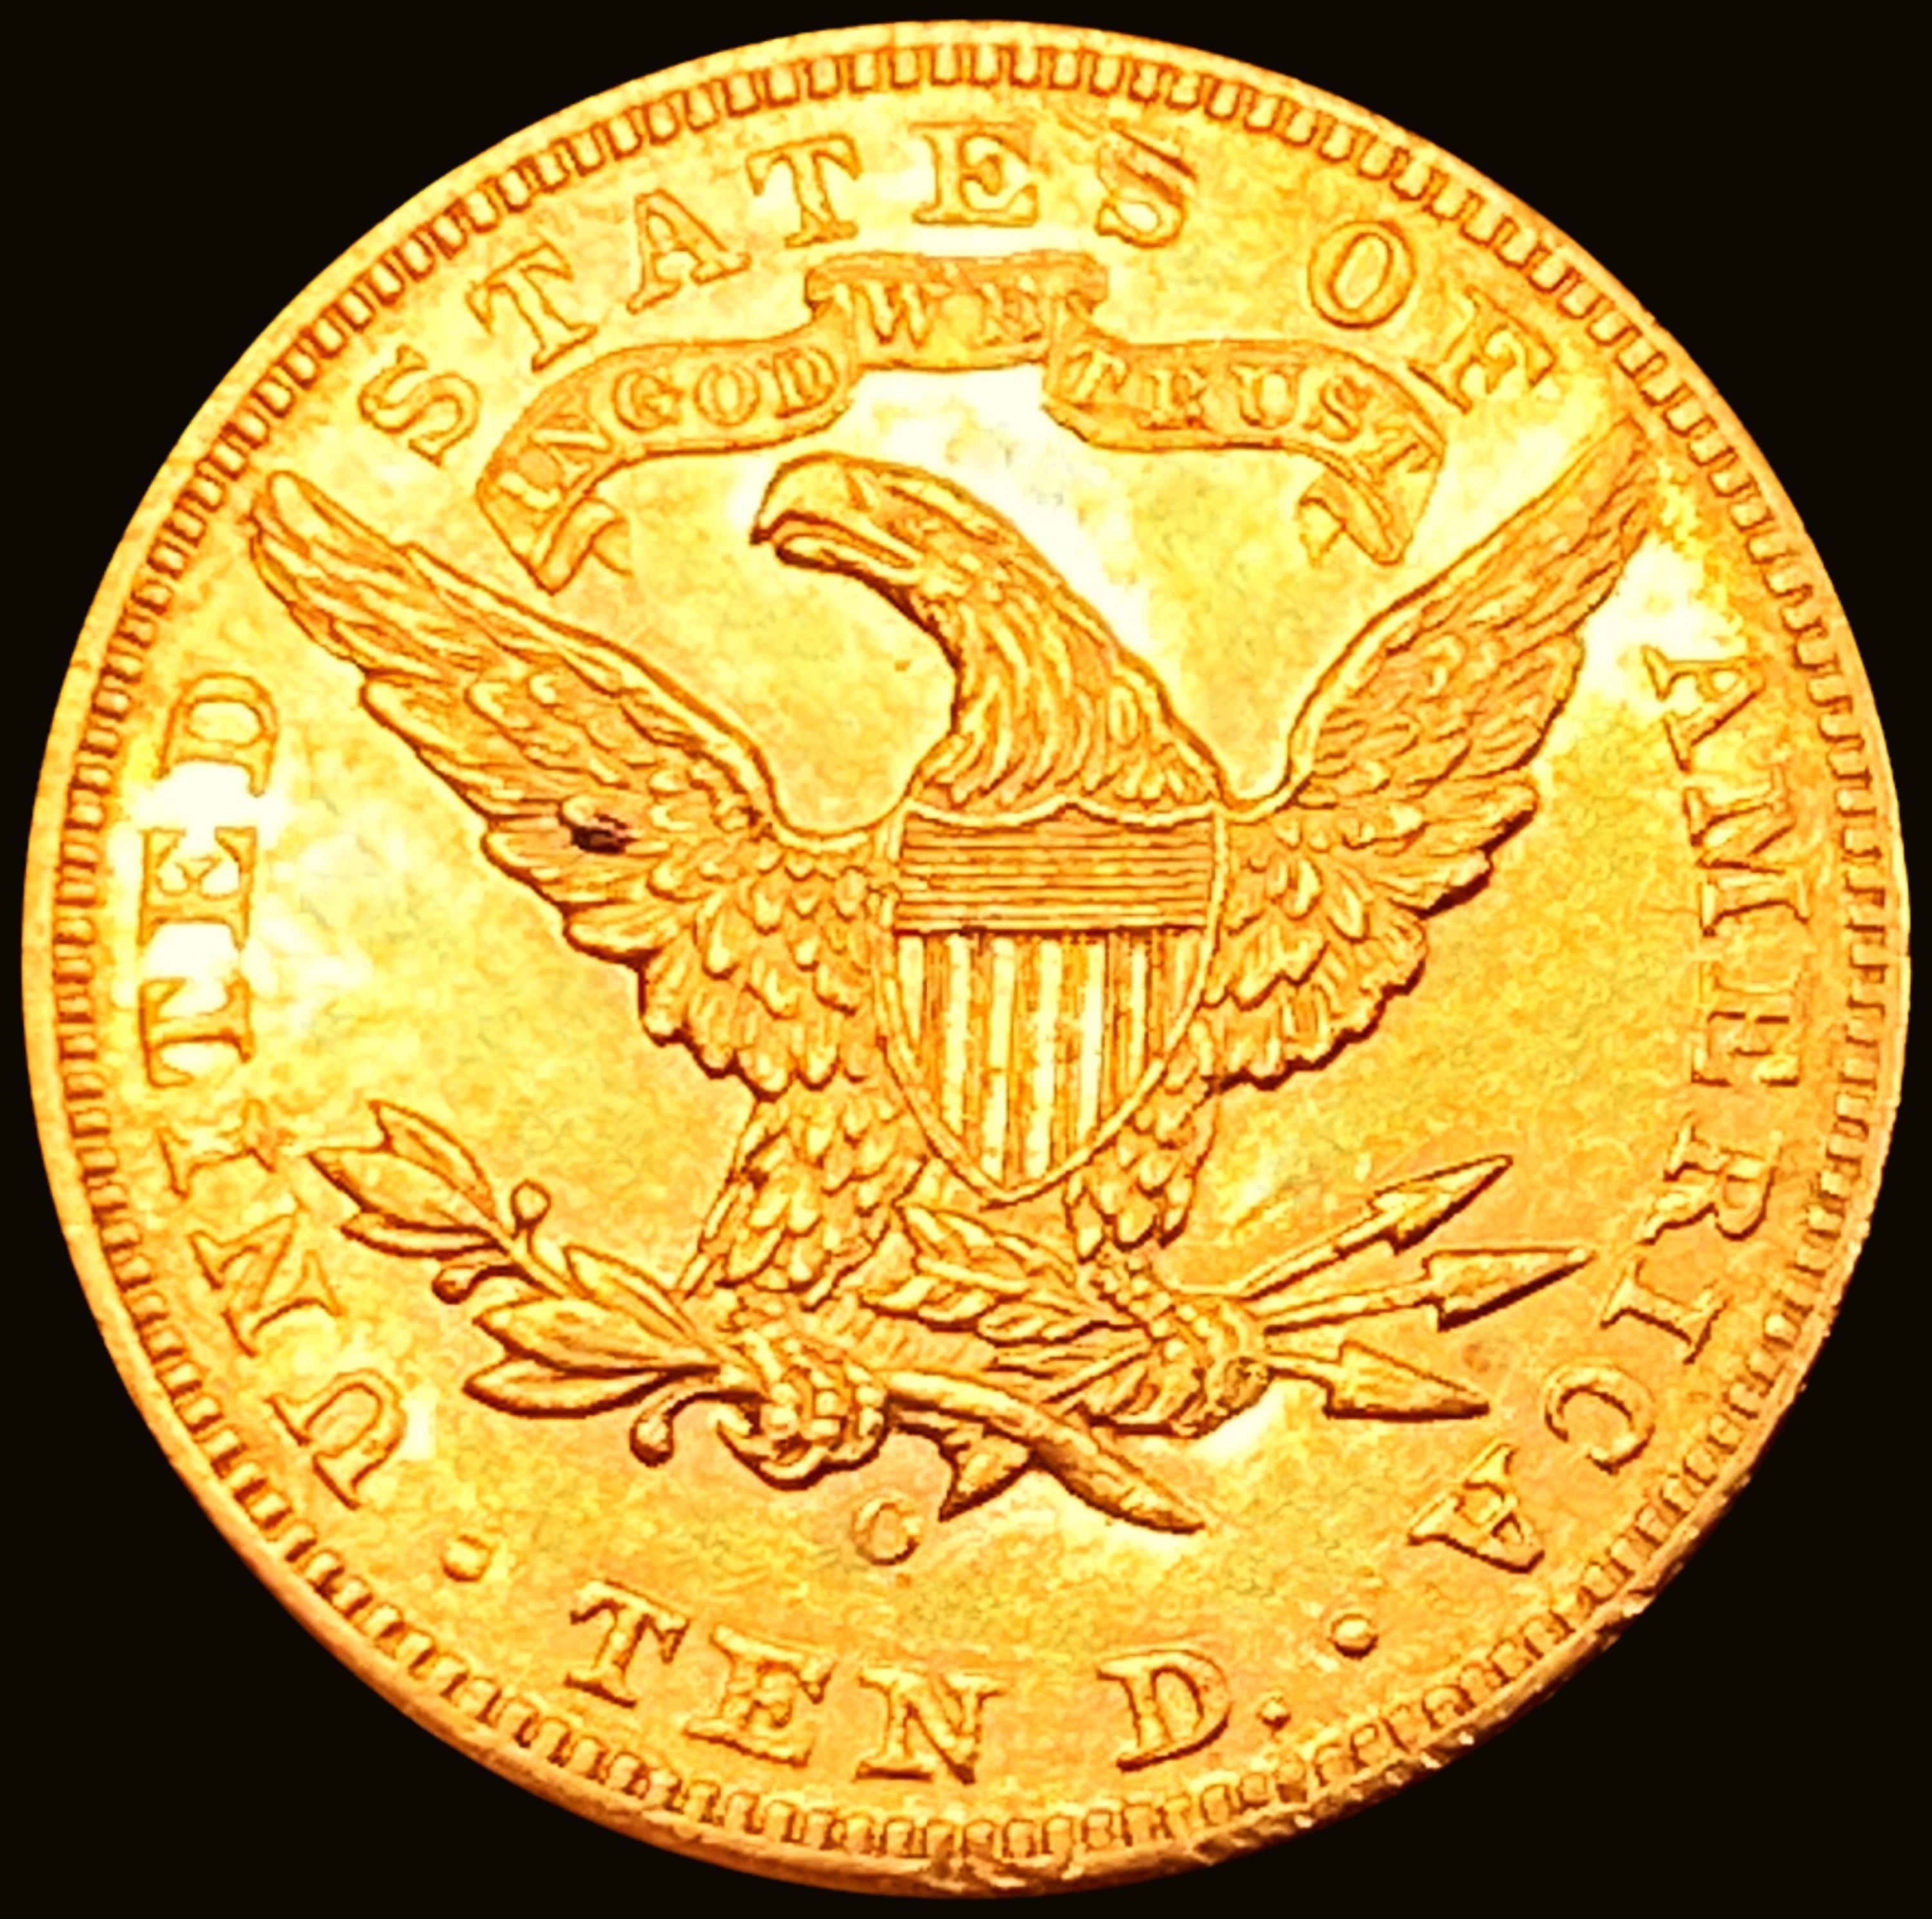 1899-O $10 Gold Eagle UNCIRCULATED